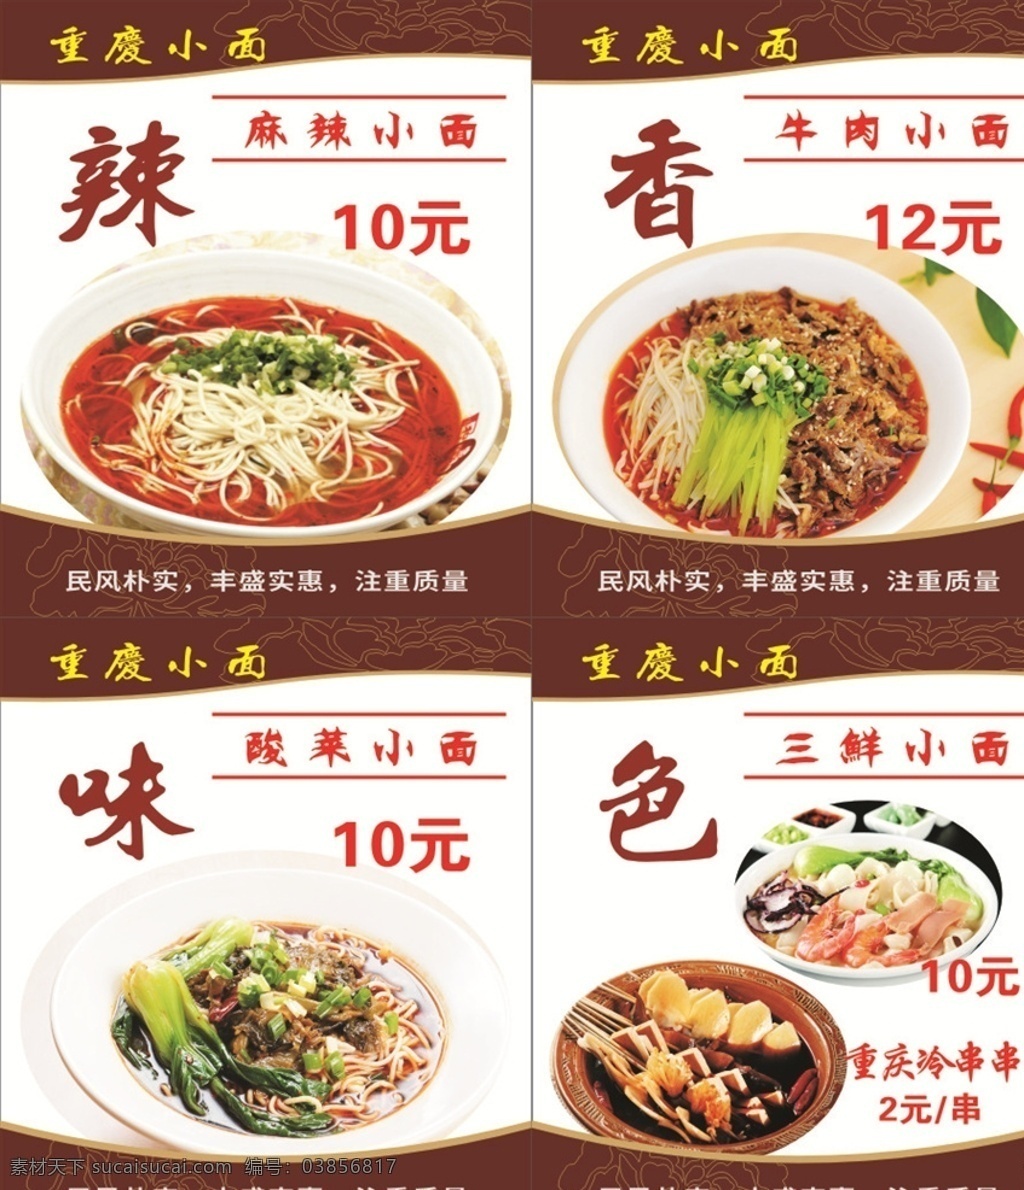 重庆小面 民风朴实 丰盛实惠 注重质量 颜色鲜美 菜单菜谱